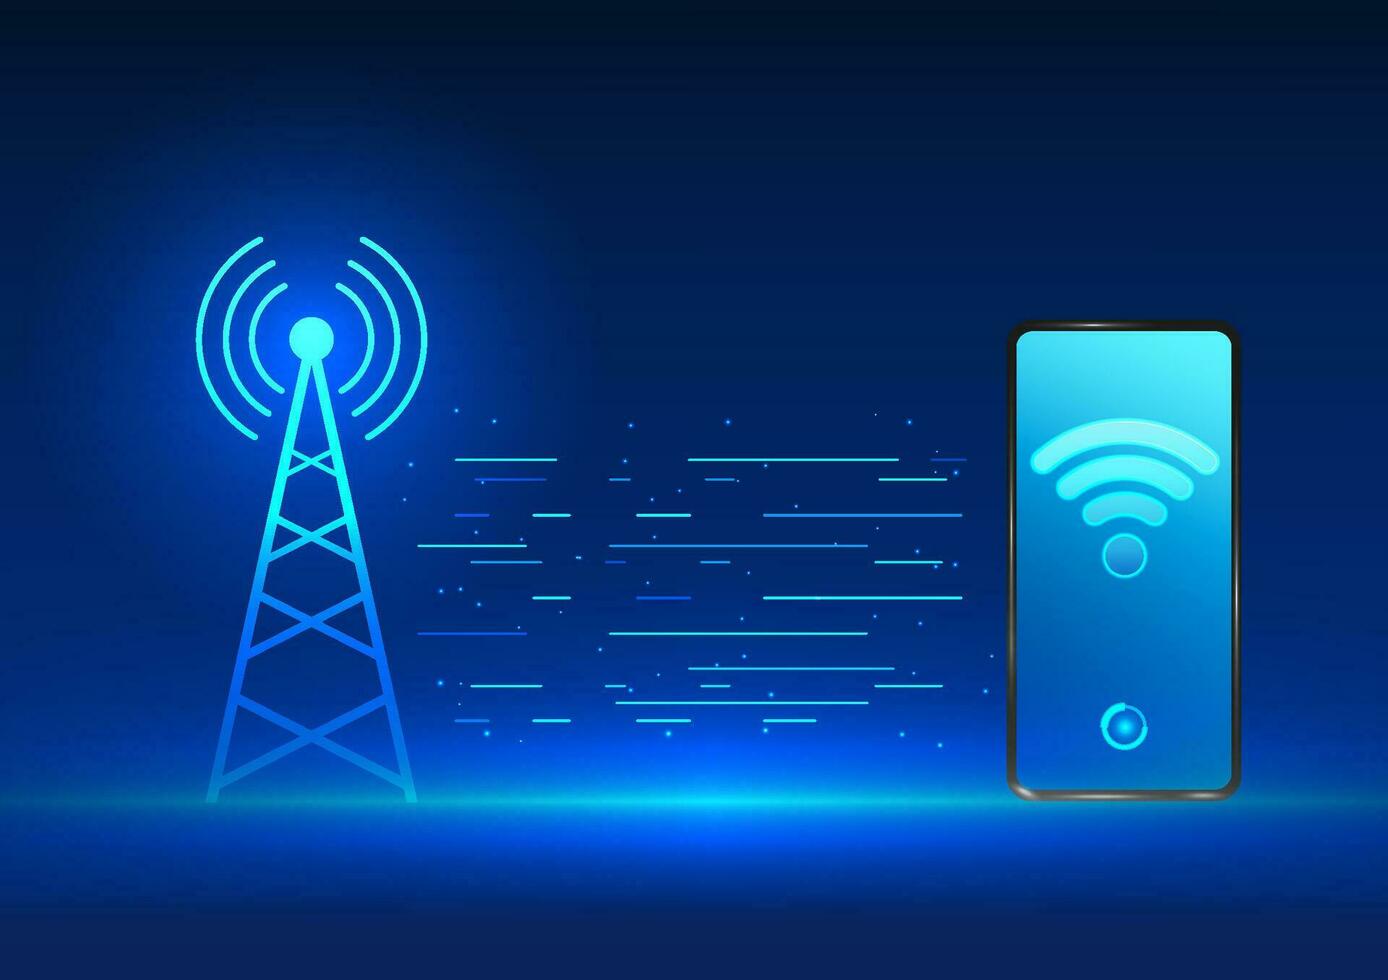 transmisión torre tecnología eso es un tecnología ese emite señales dentro móvil Los telefonos. usado para comunicación y Internet acceso vector ilustración de célula torre con teléfono inteligente con Wifi icono